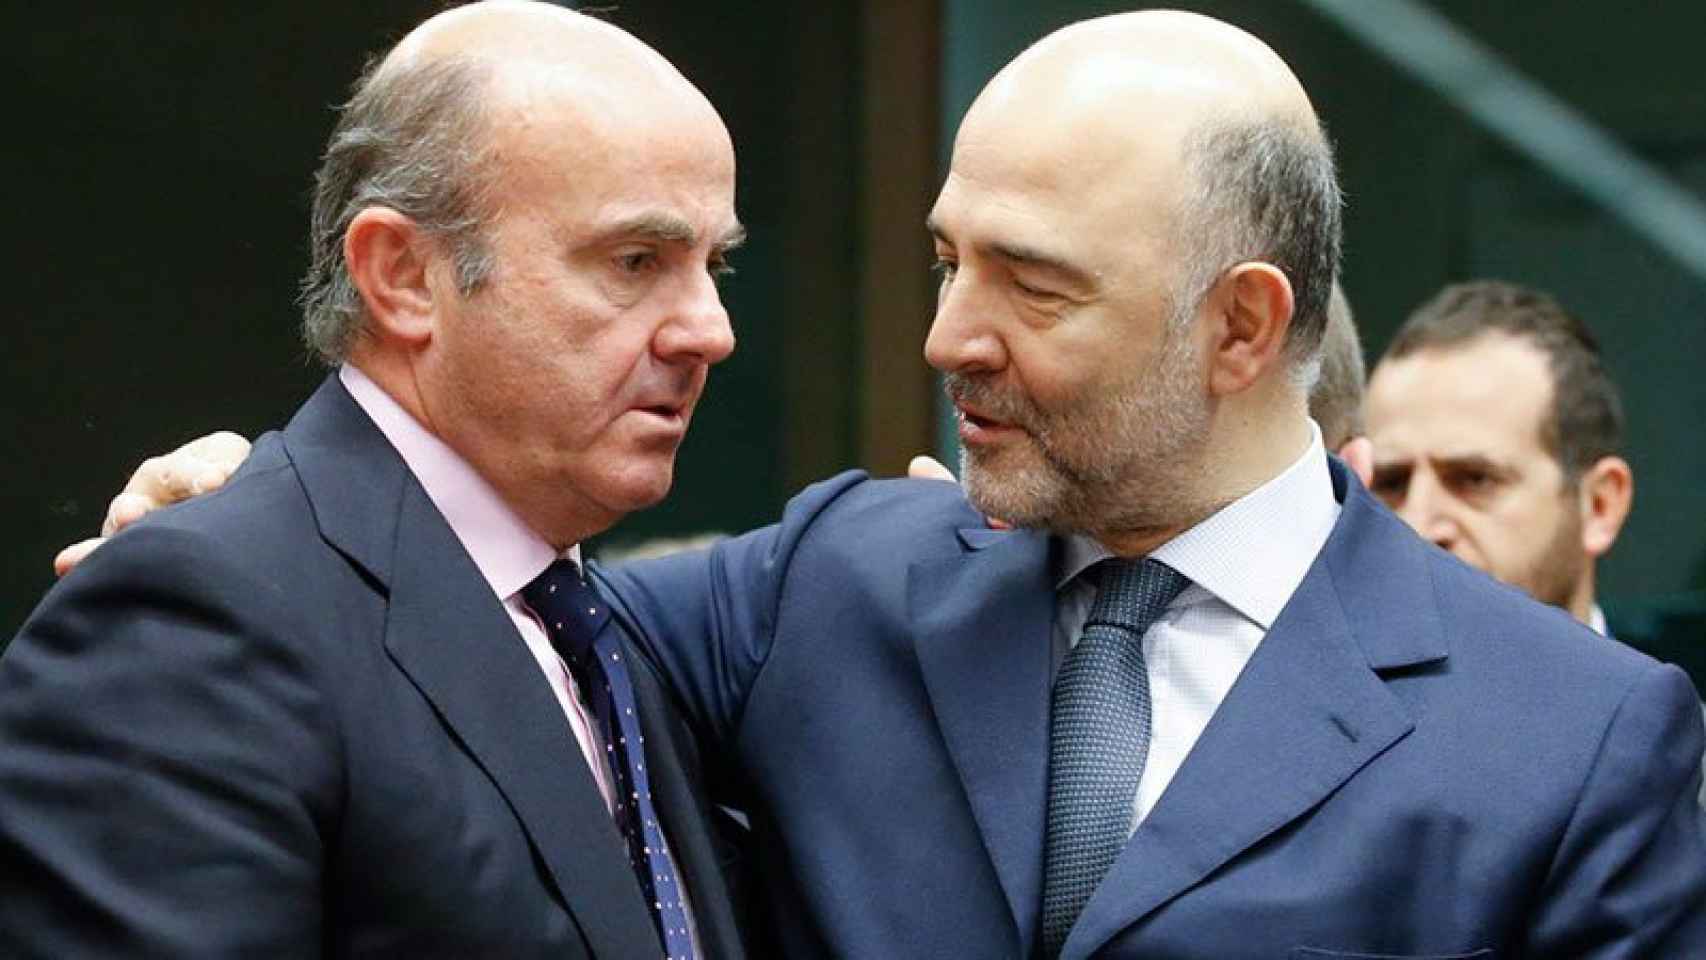 Pierre Moscovici, comisario europeo de Finanzas, saluda afectuosamente al ministro español de Economía, Luis de Guindos, en una imagen de archivo.